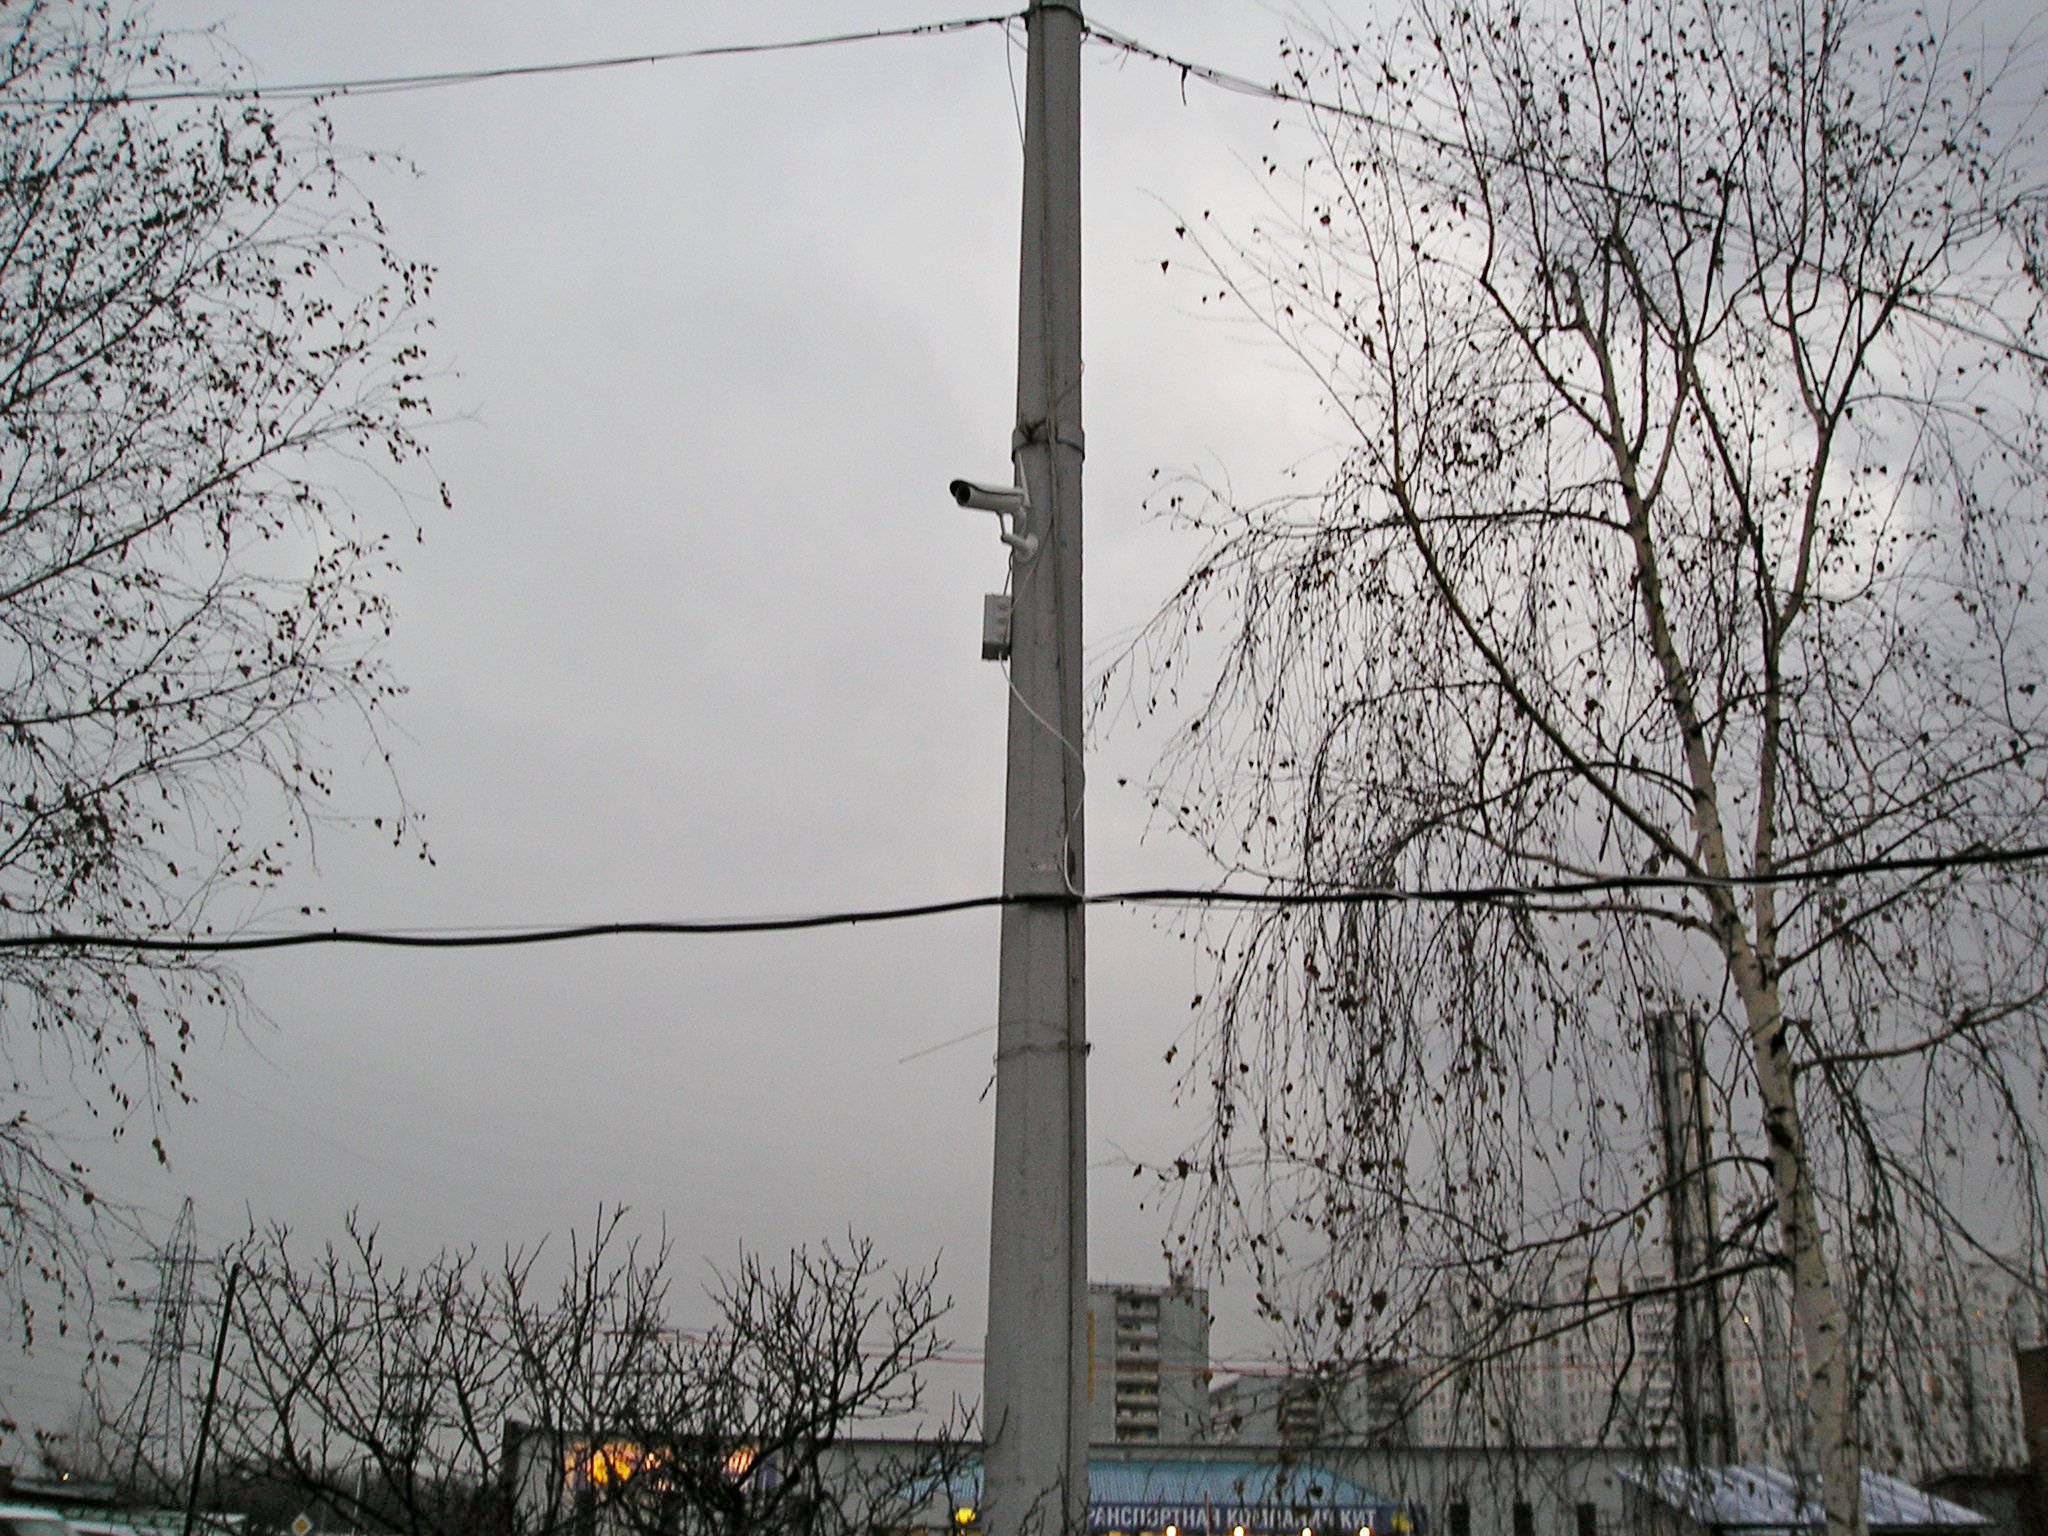 Монтаж уличной IP камеры Link- NC326G-IR с 3G модемом  на  Новорязанском Шоссе.